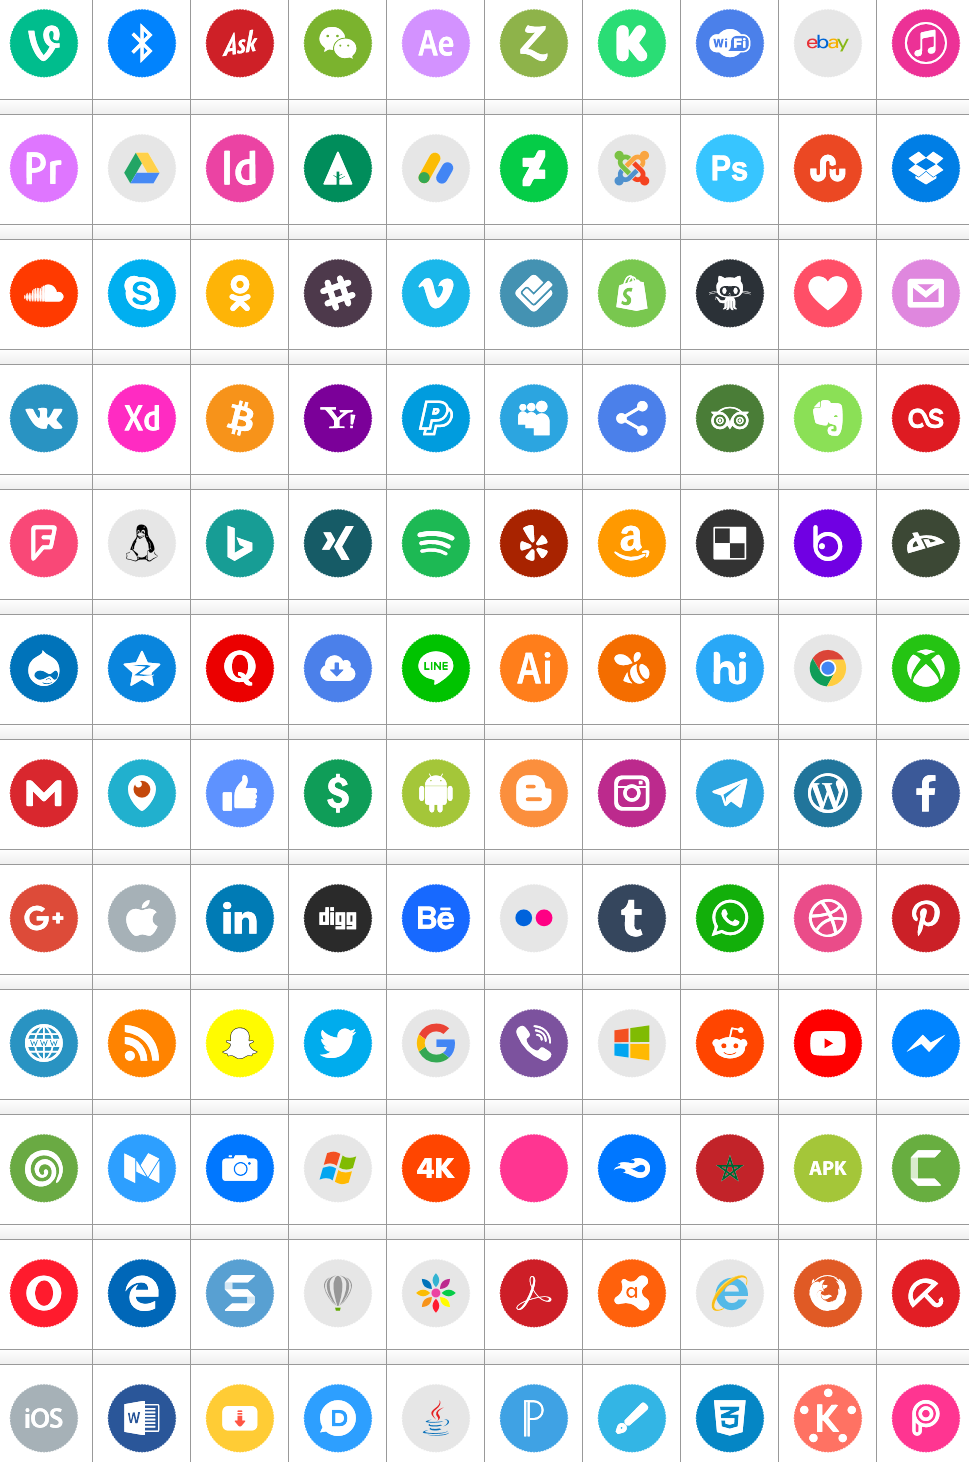 Download Font Icons Social Media 8 Color #font #color ttf otf 120 #icons elharrak #fonts new 2019